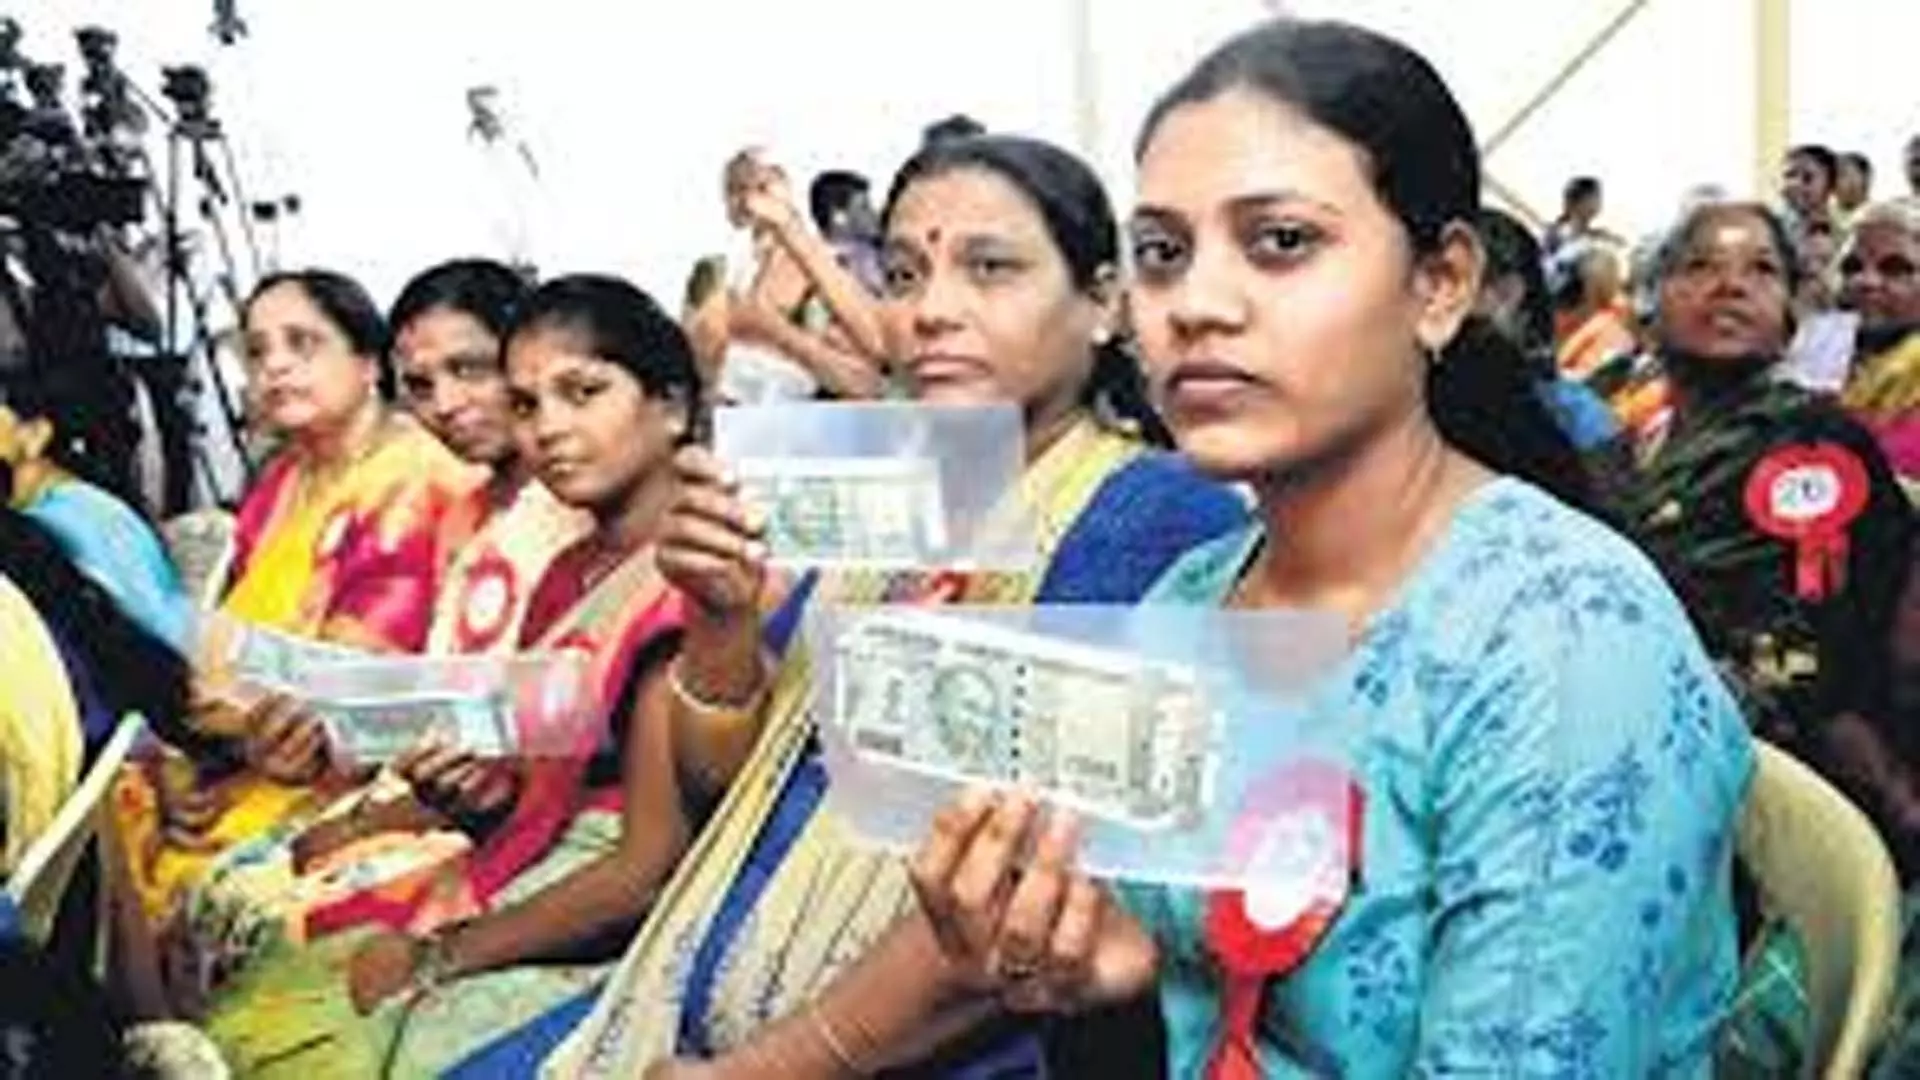 मिचौंग: गैर-राशन कार्ड धारकों को 6,000 रुपये जमा किए गए